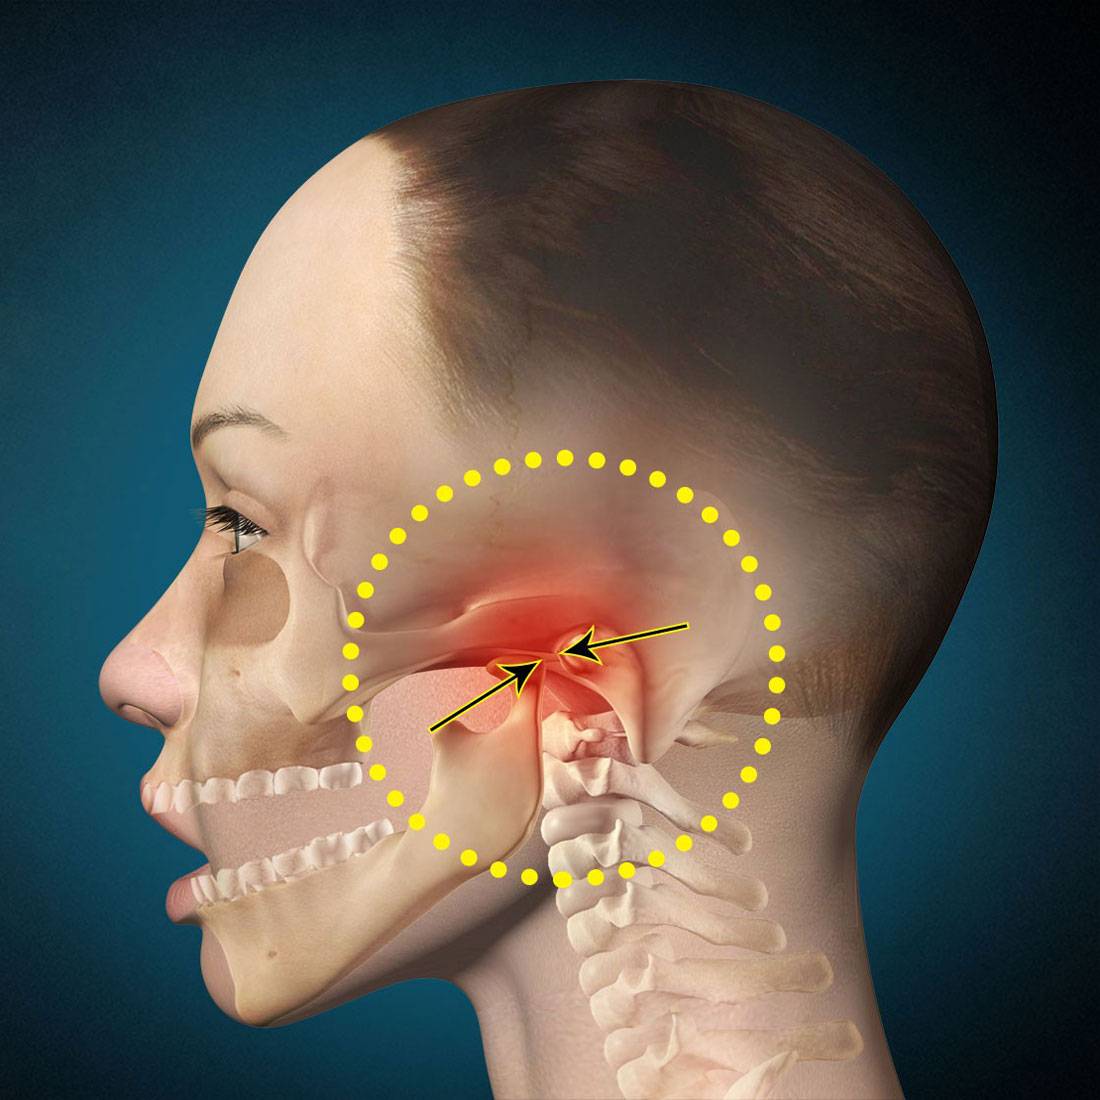 Боль в ухе при глотании: причины, симптомы, лечение, почему болит ухо при глотании, что делать, нужно ли обращаться к врачу